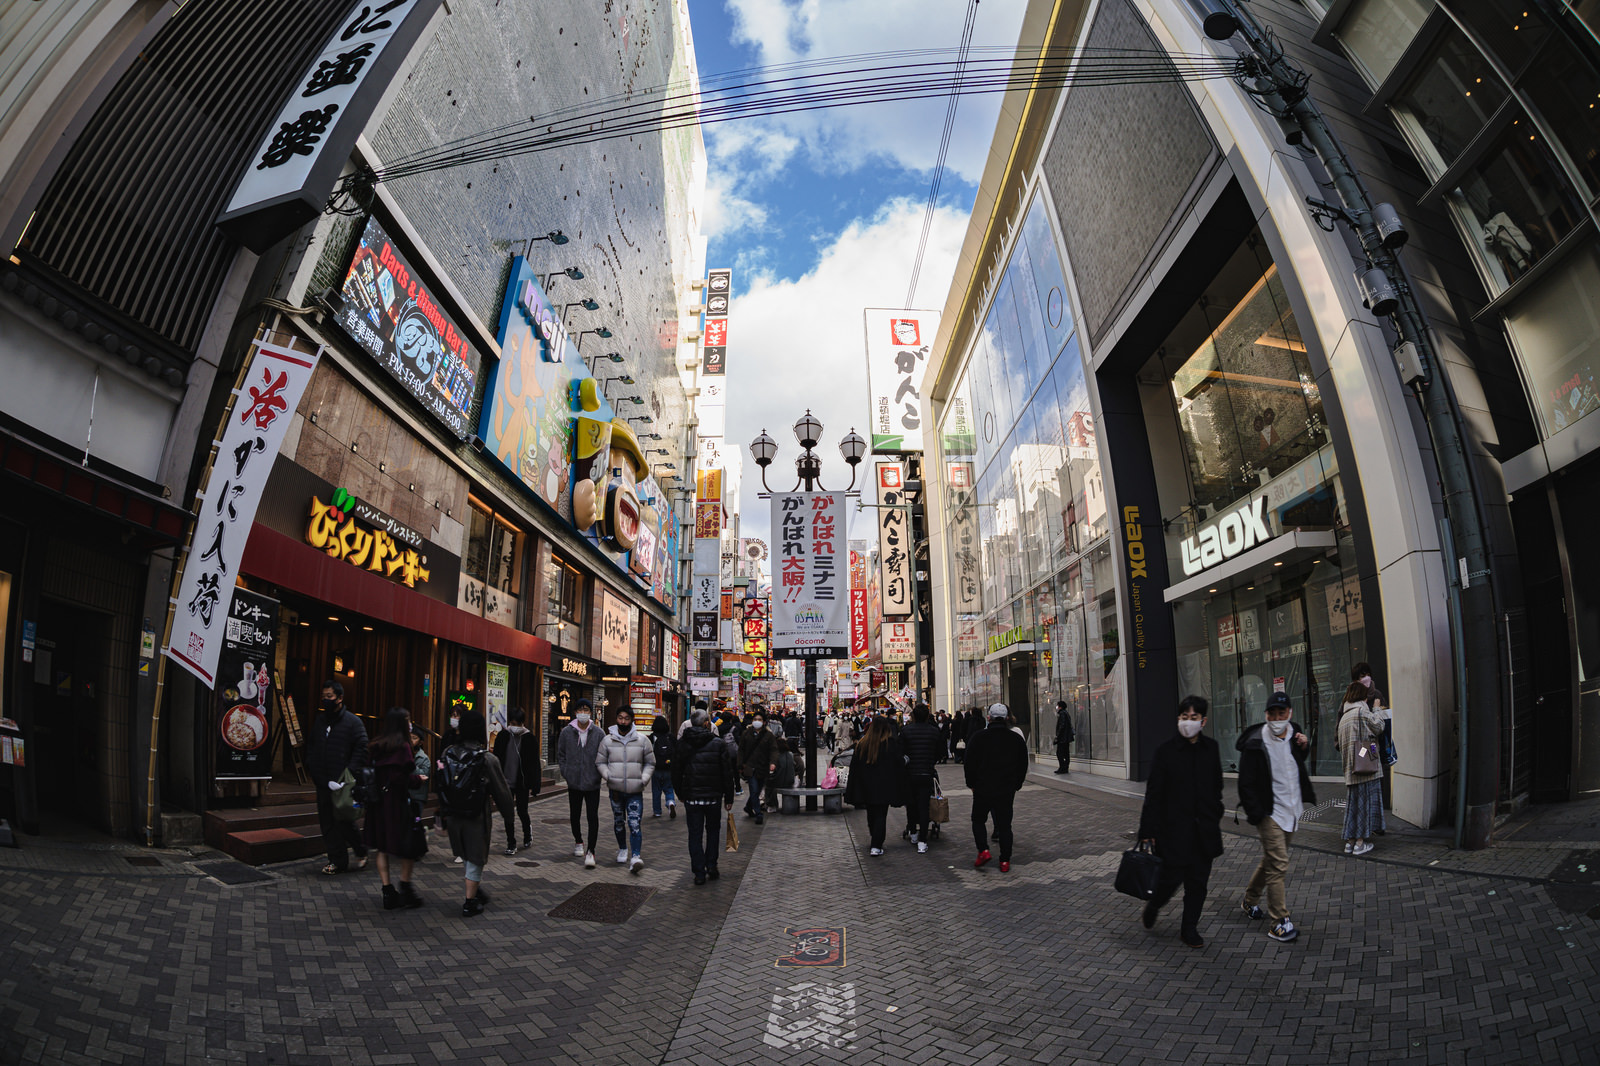 「魚眼レンズで撮る大阪ミナミを行き交う人々 | フリー素材のぱくたそ」の写真